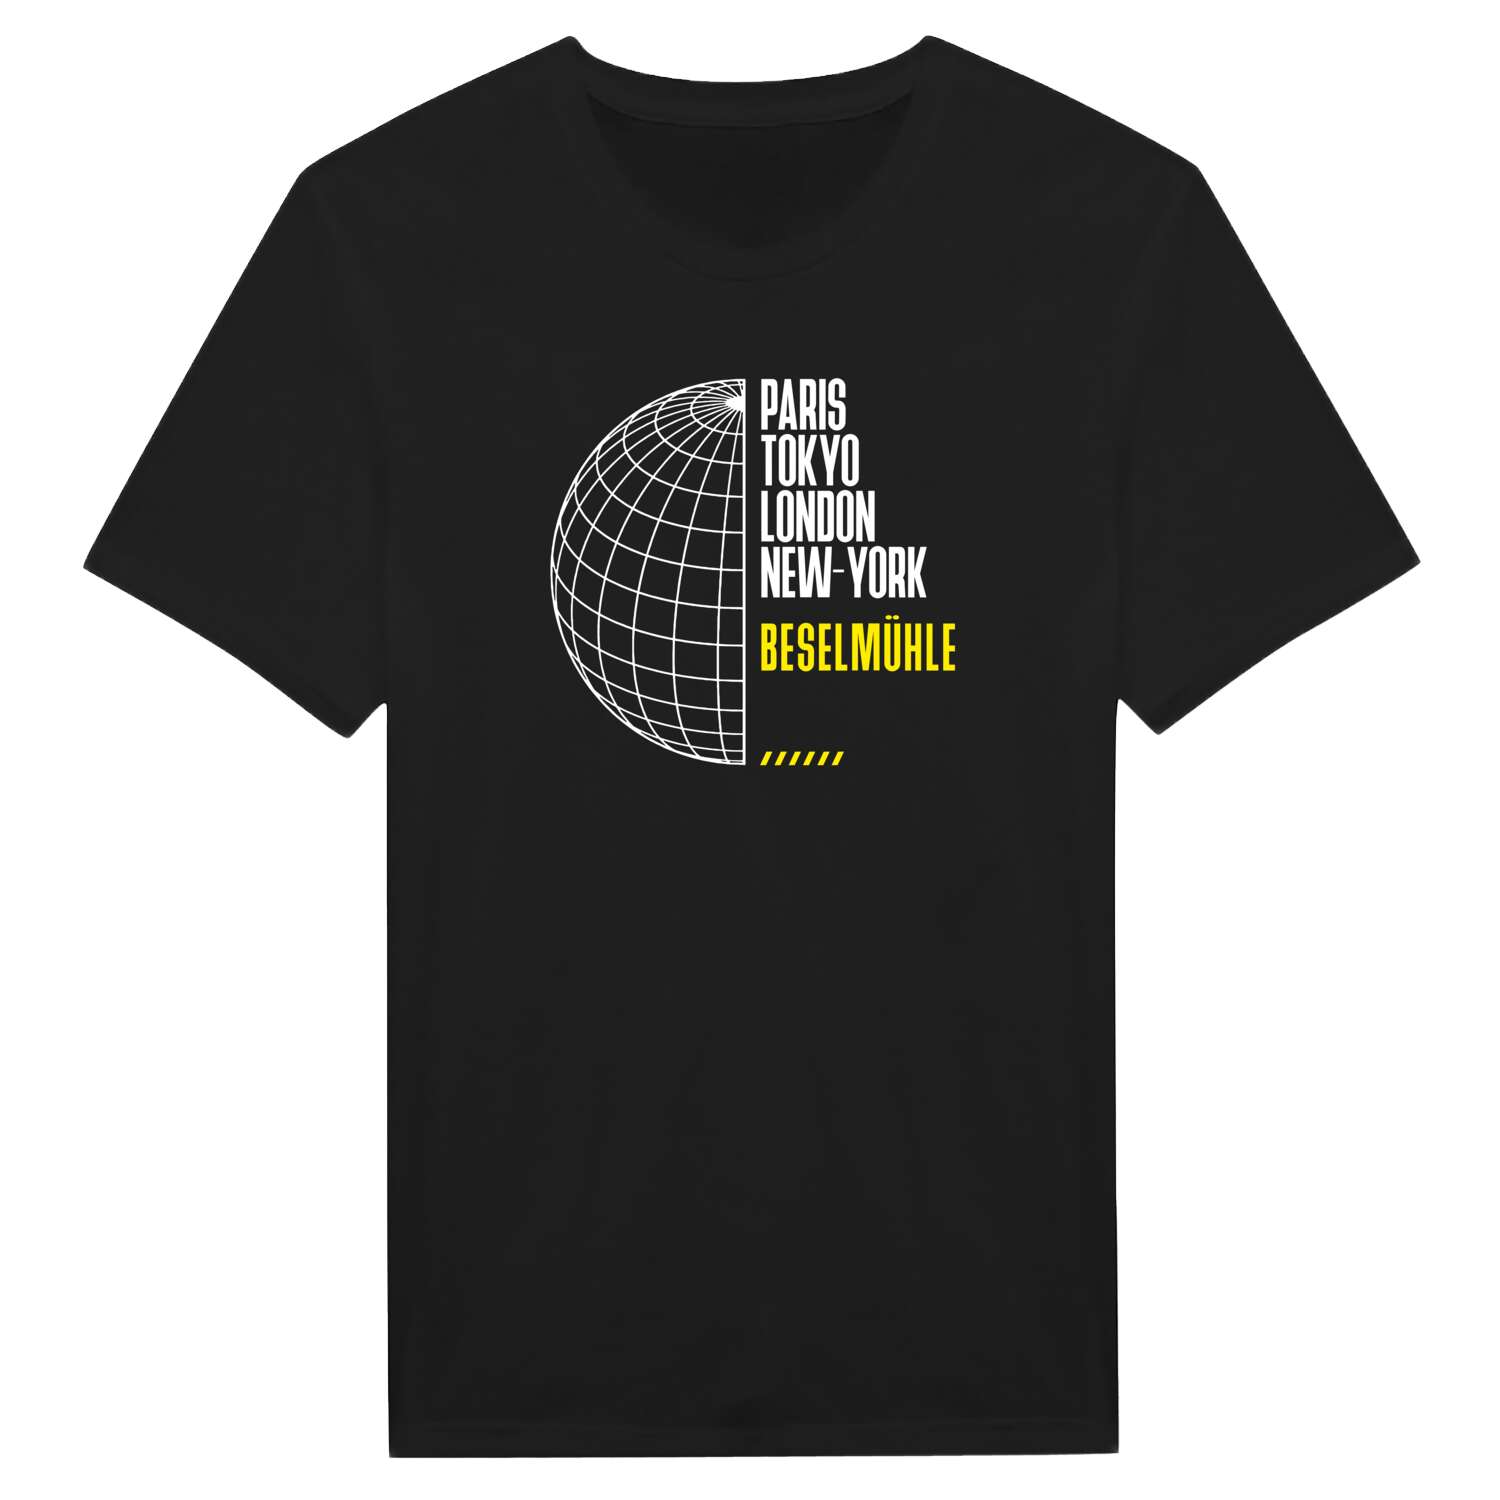 Beselmühle T-Shirt »Paris Tokyo London«